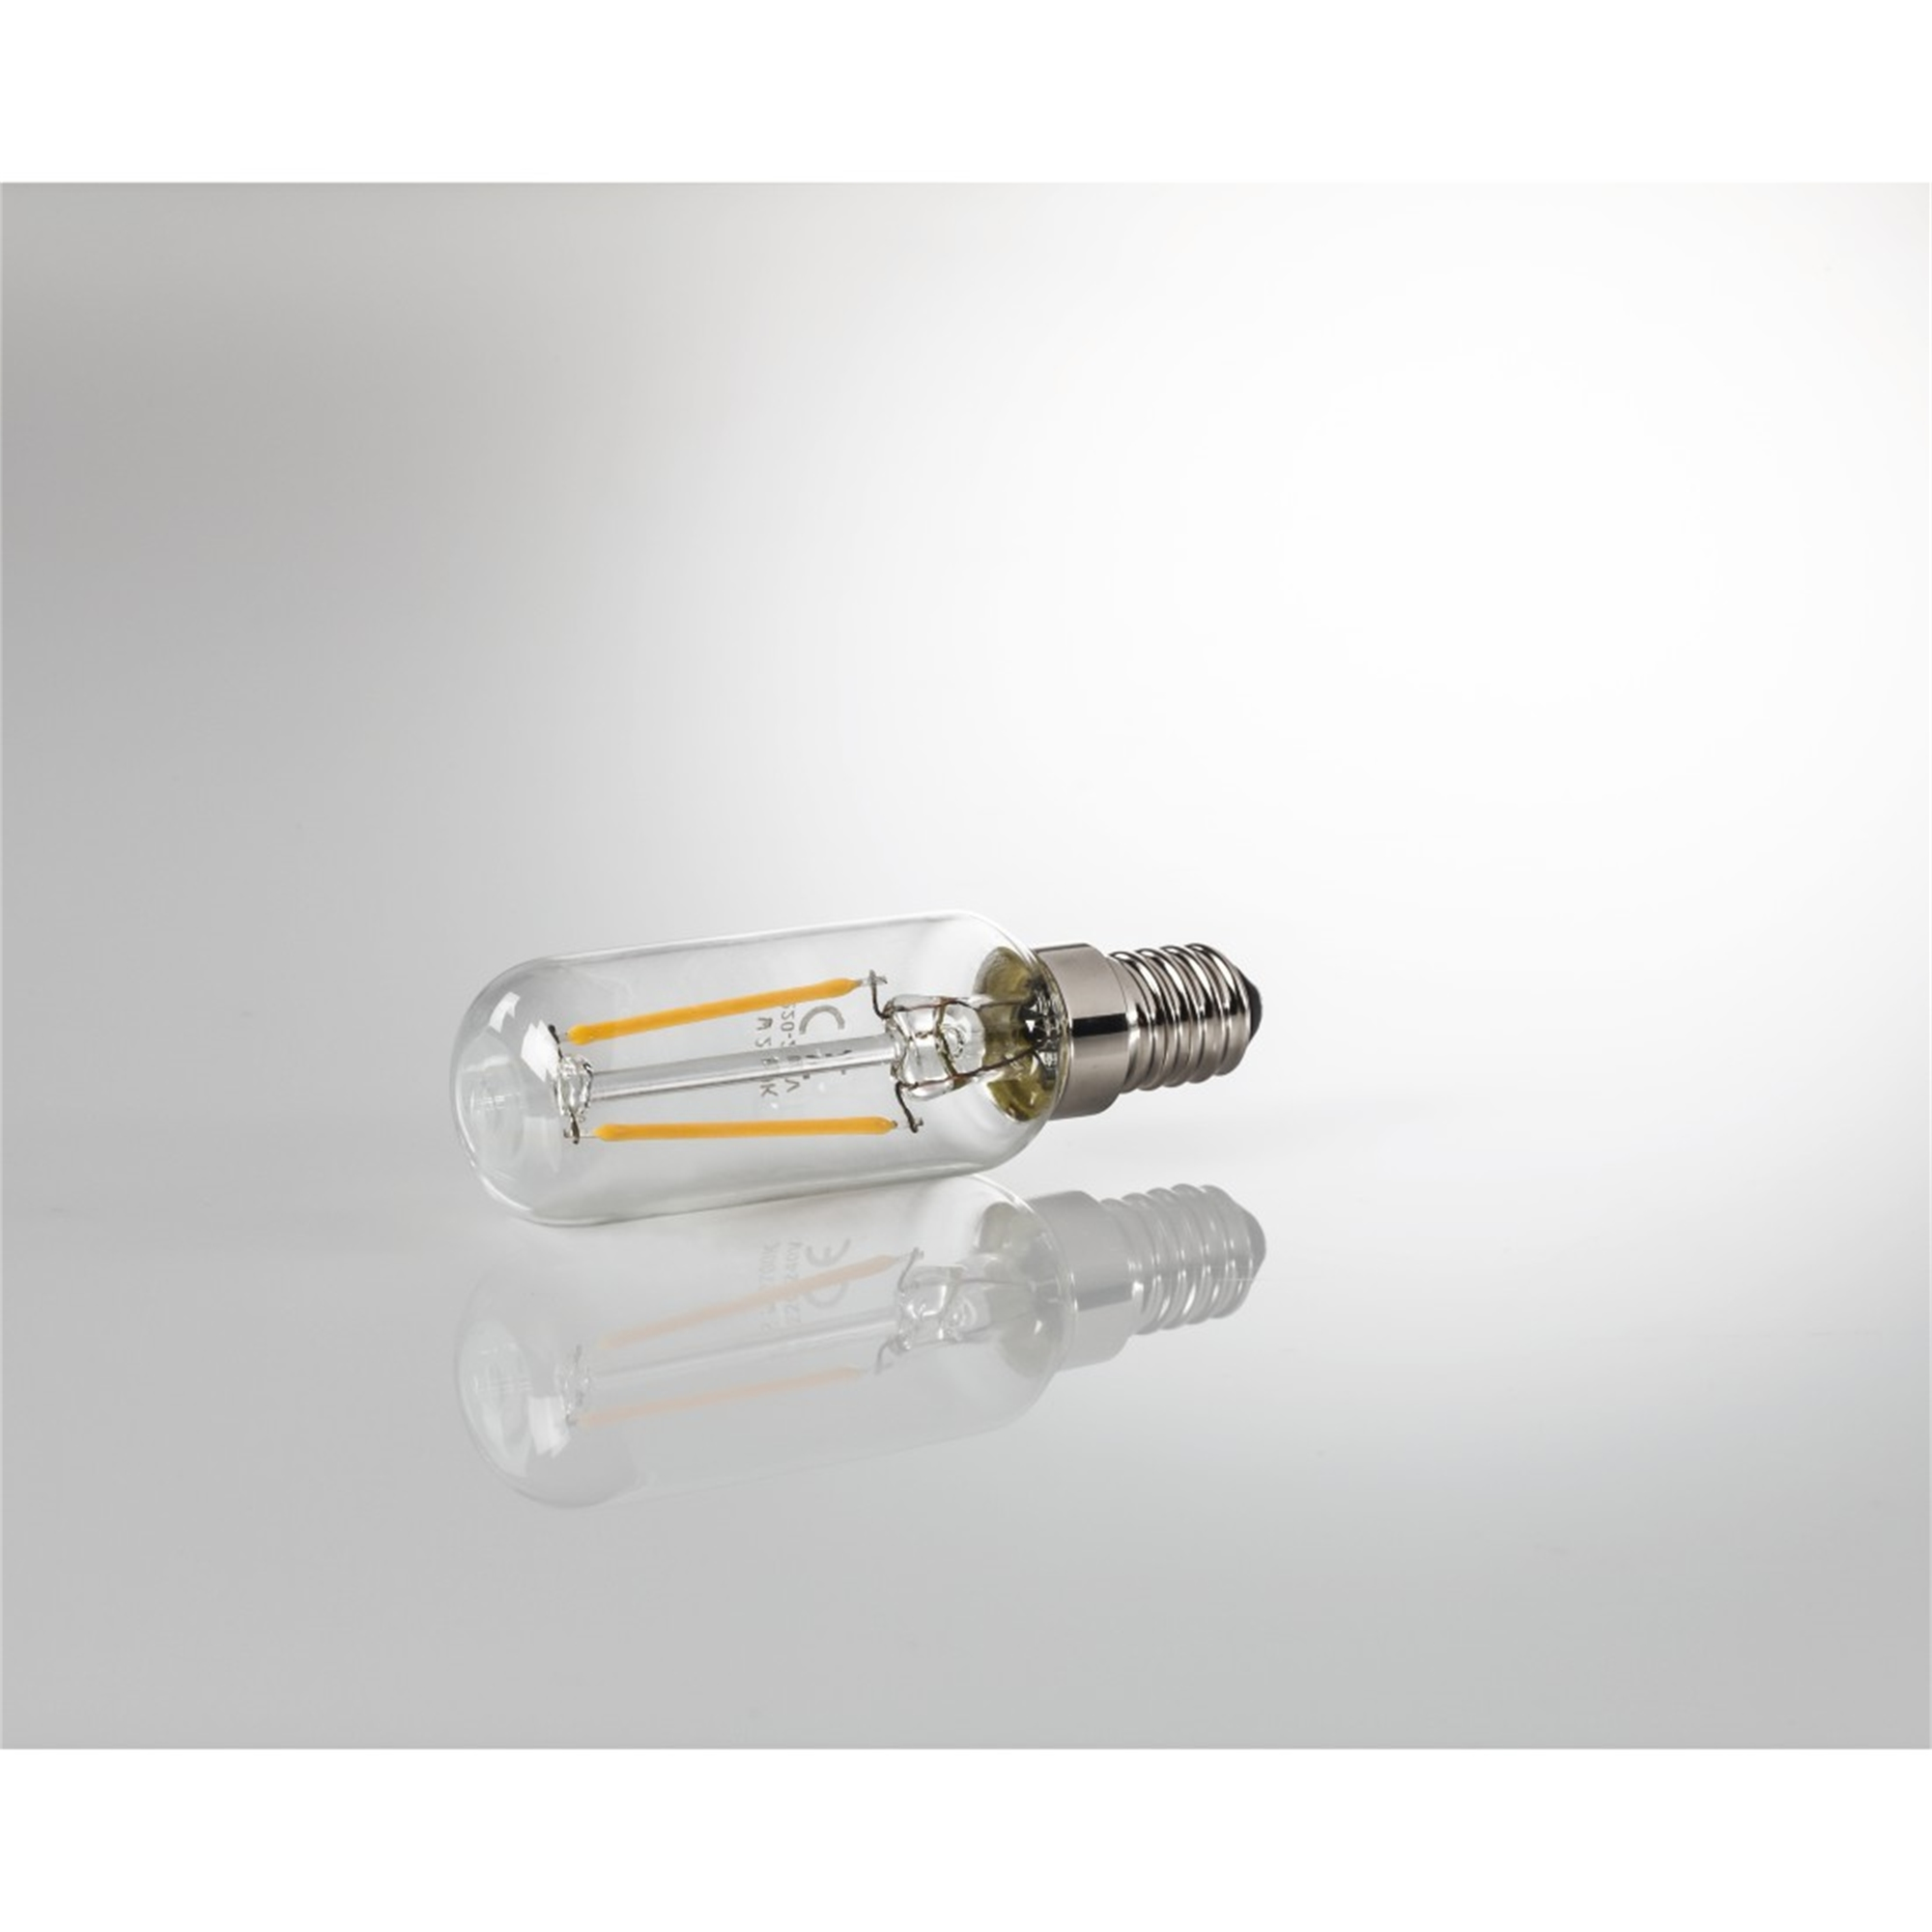 XAVAX E14, 250lm 25W E14 ersetzt Warmweiß LED-Lampe